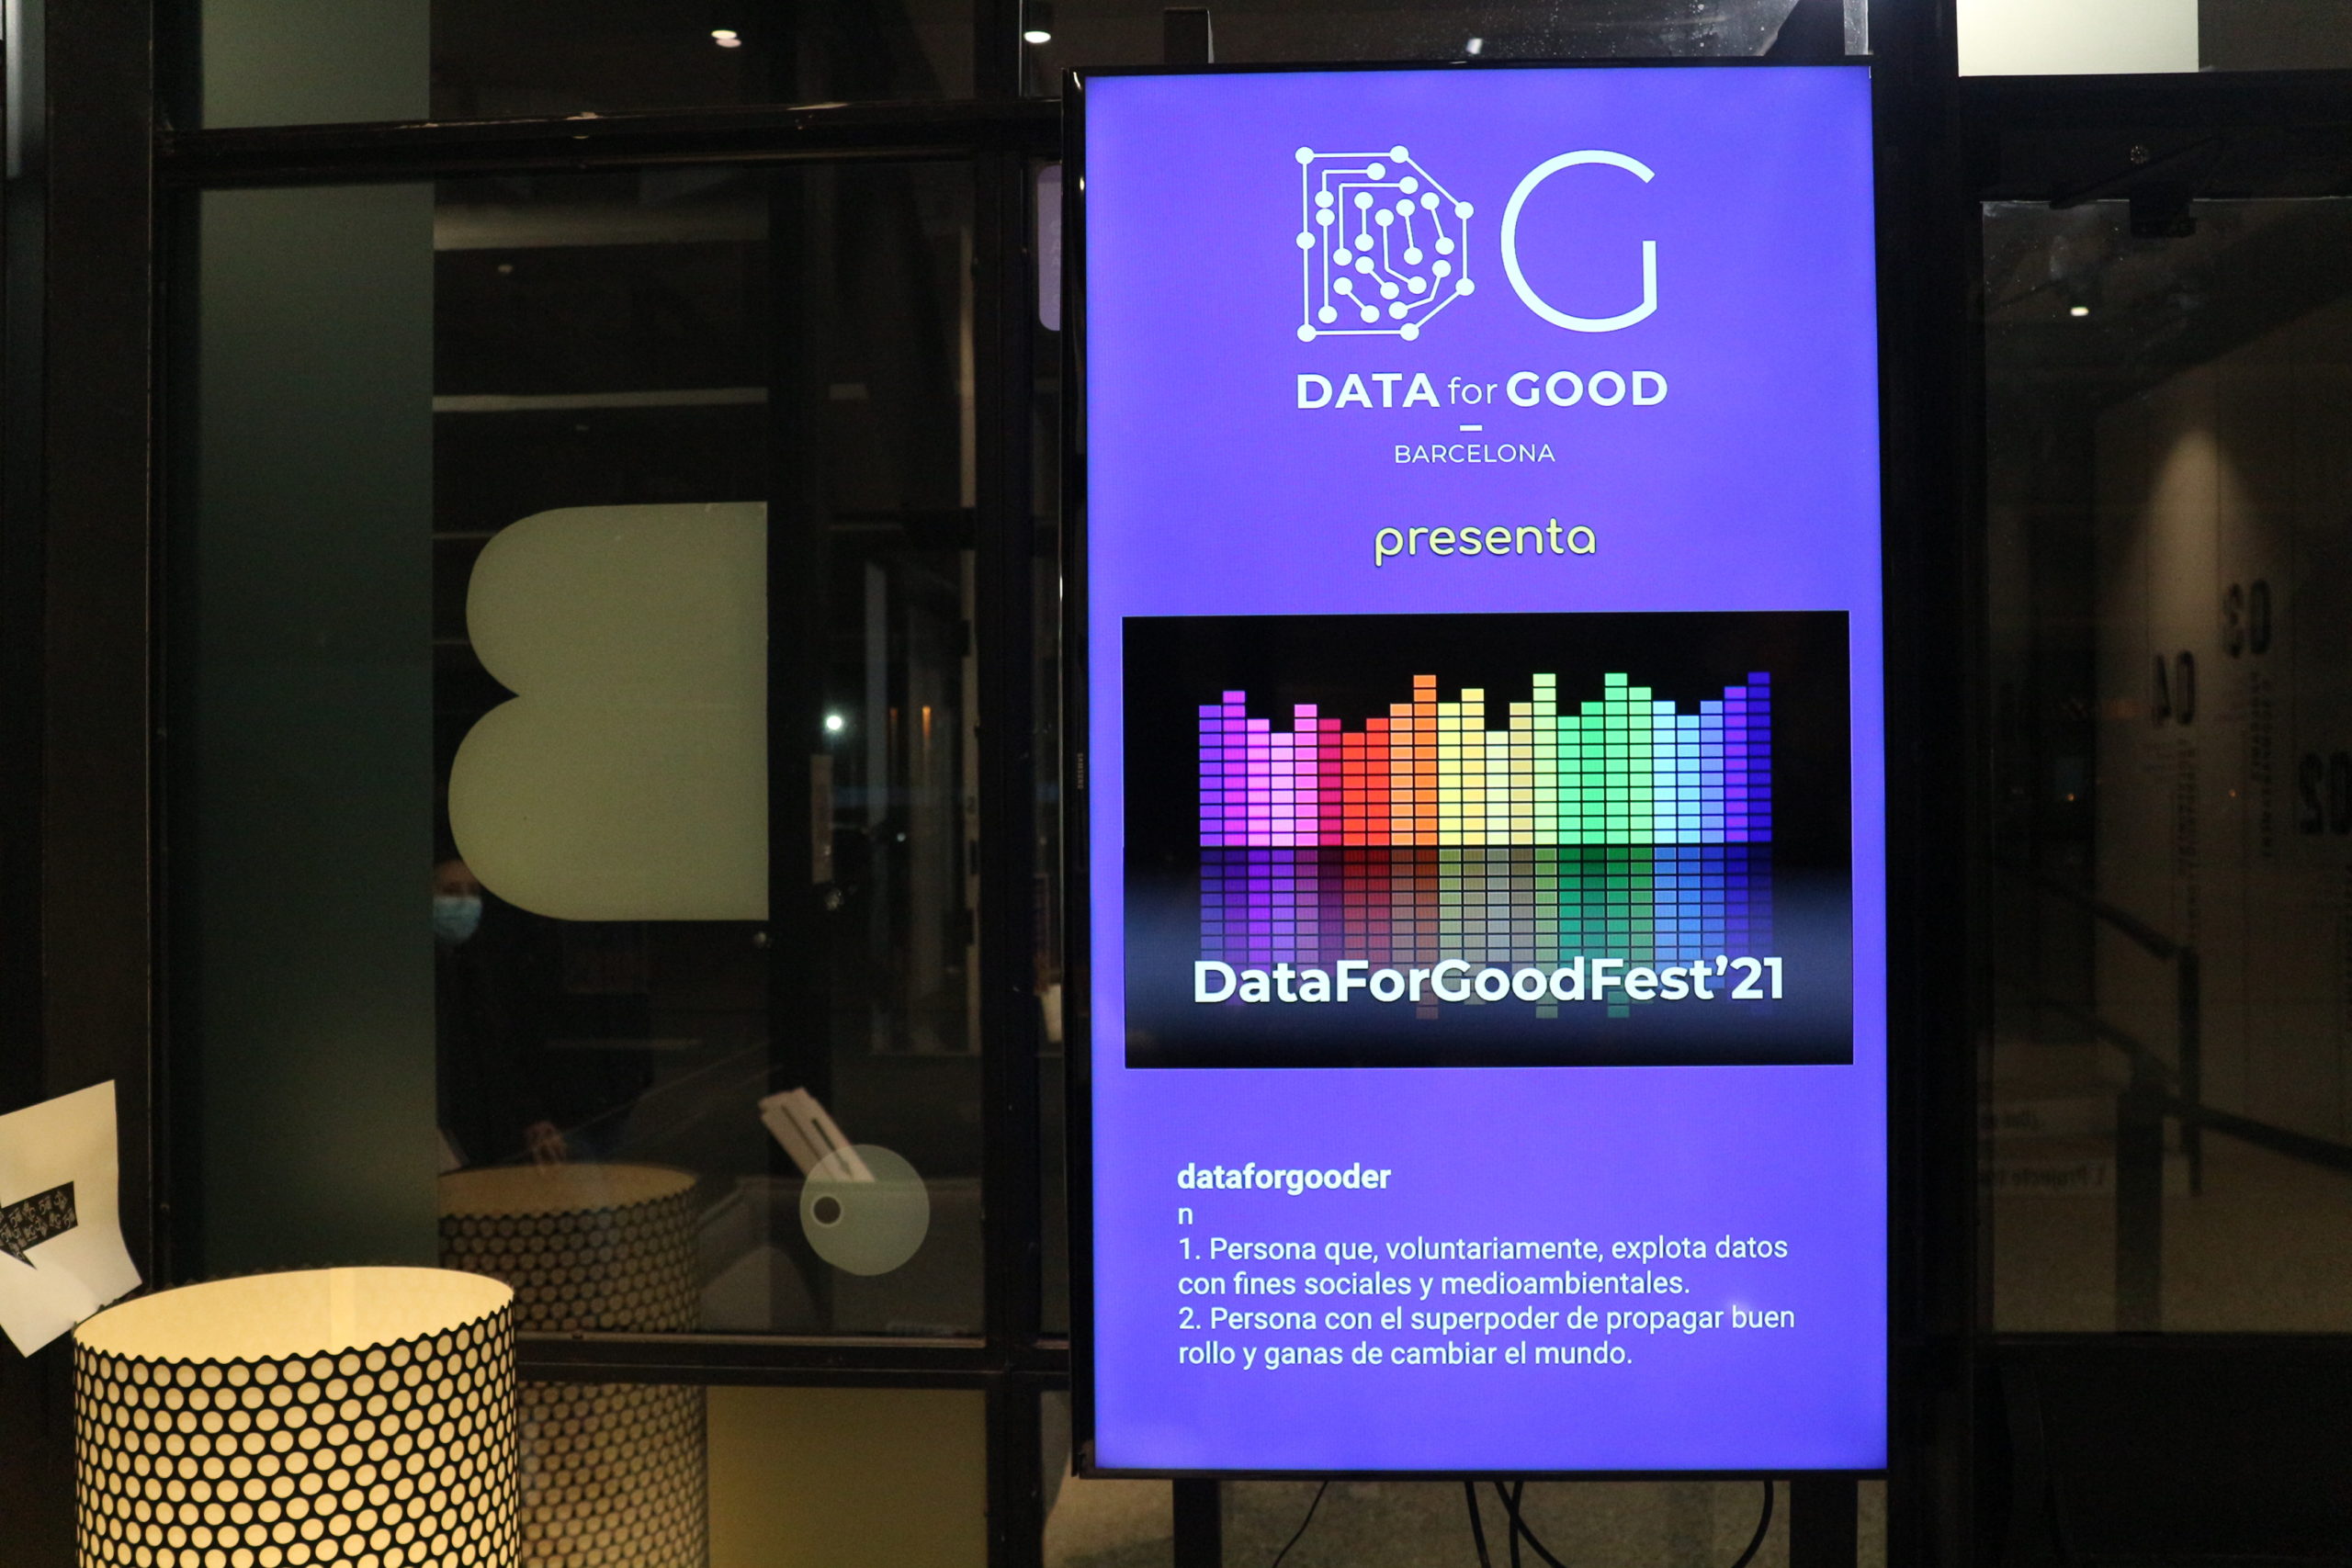 DataForGoodFest'21